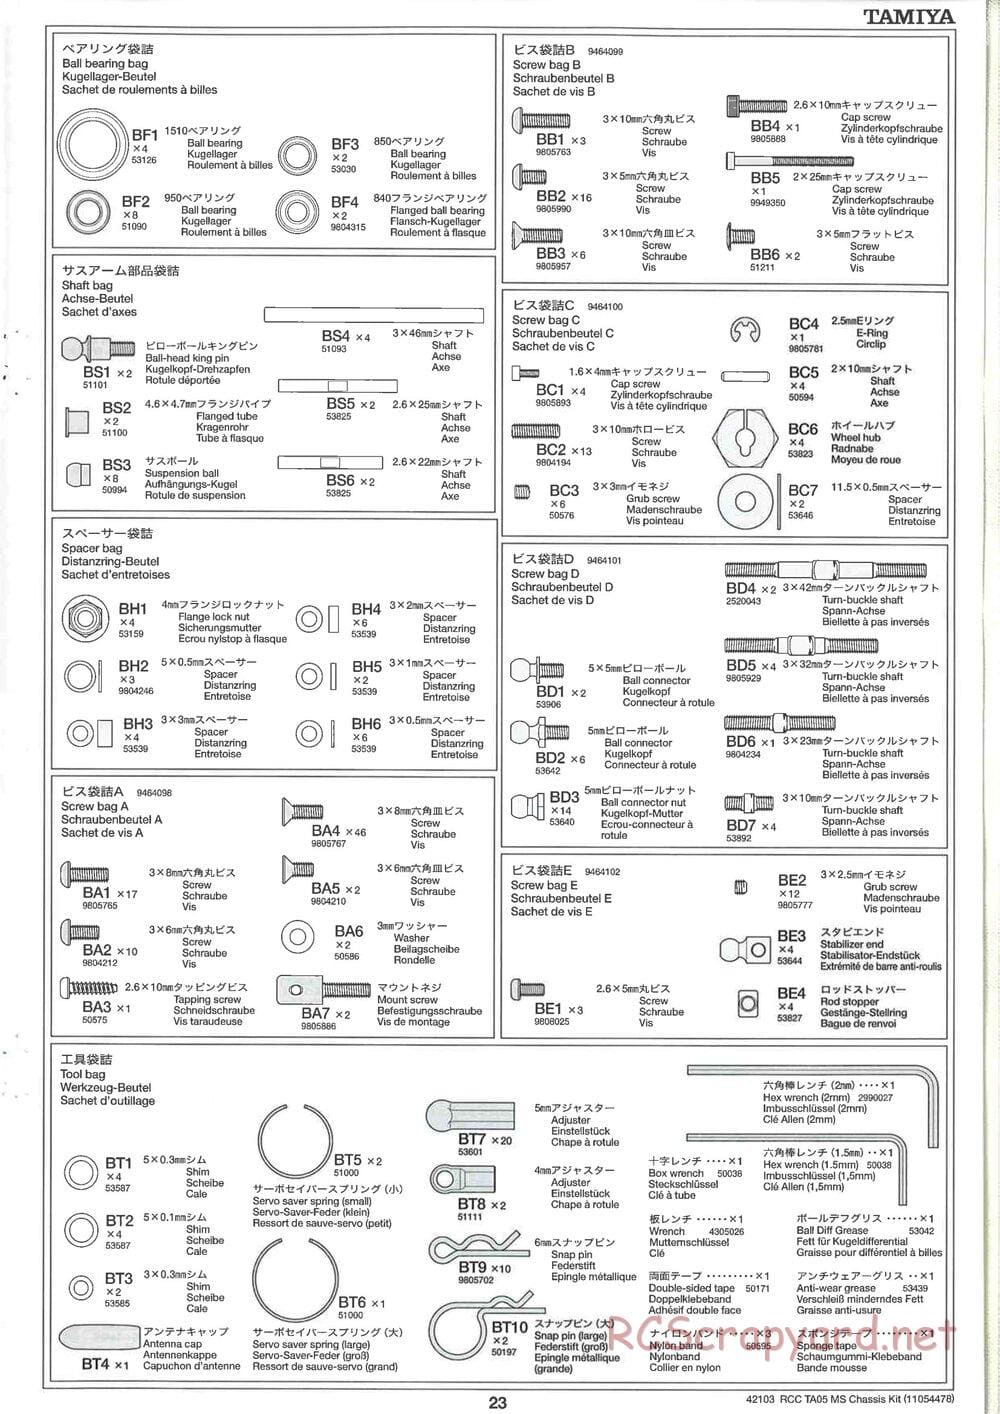 Tamiya - TA05 MS Chassis - Manual - Page 23